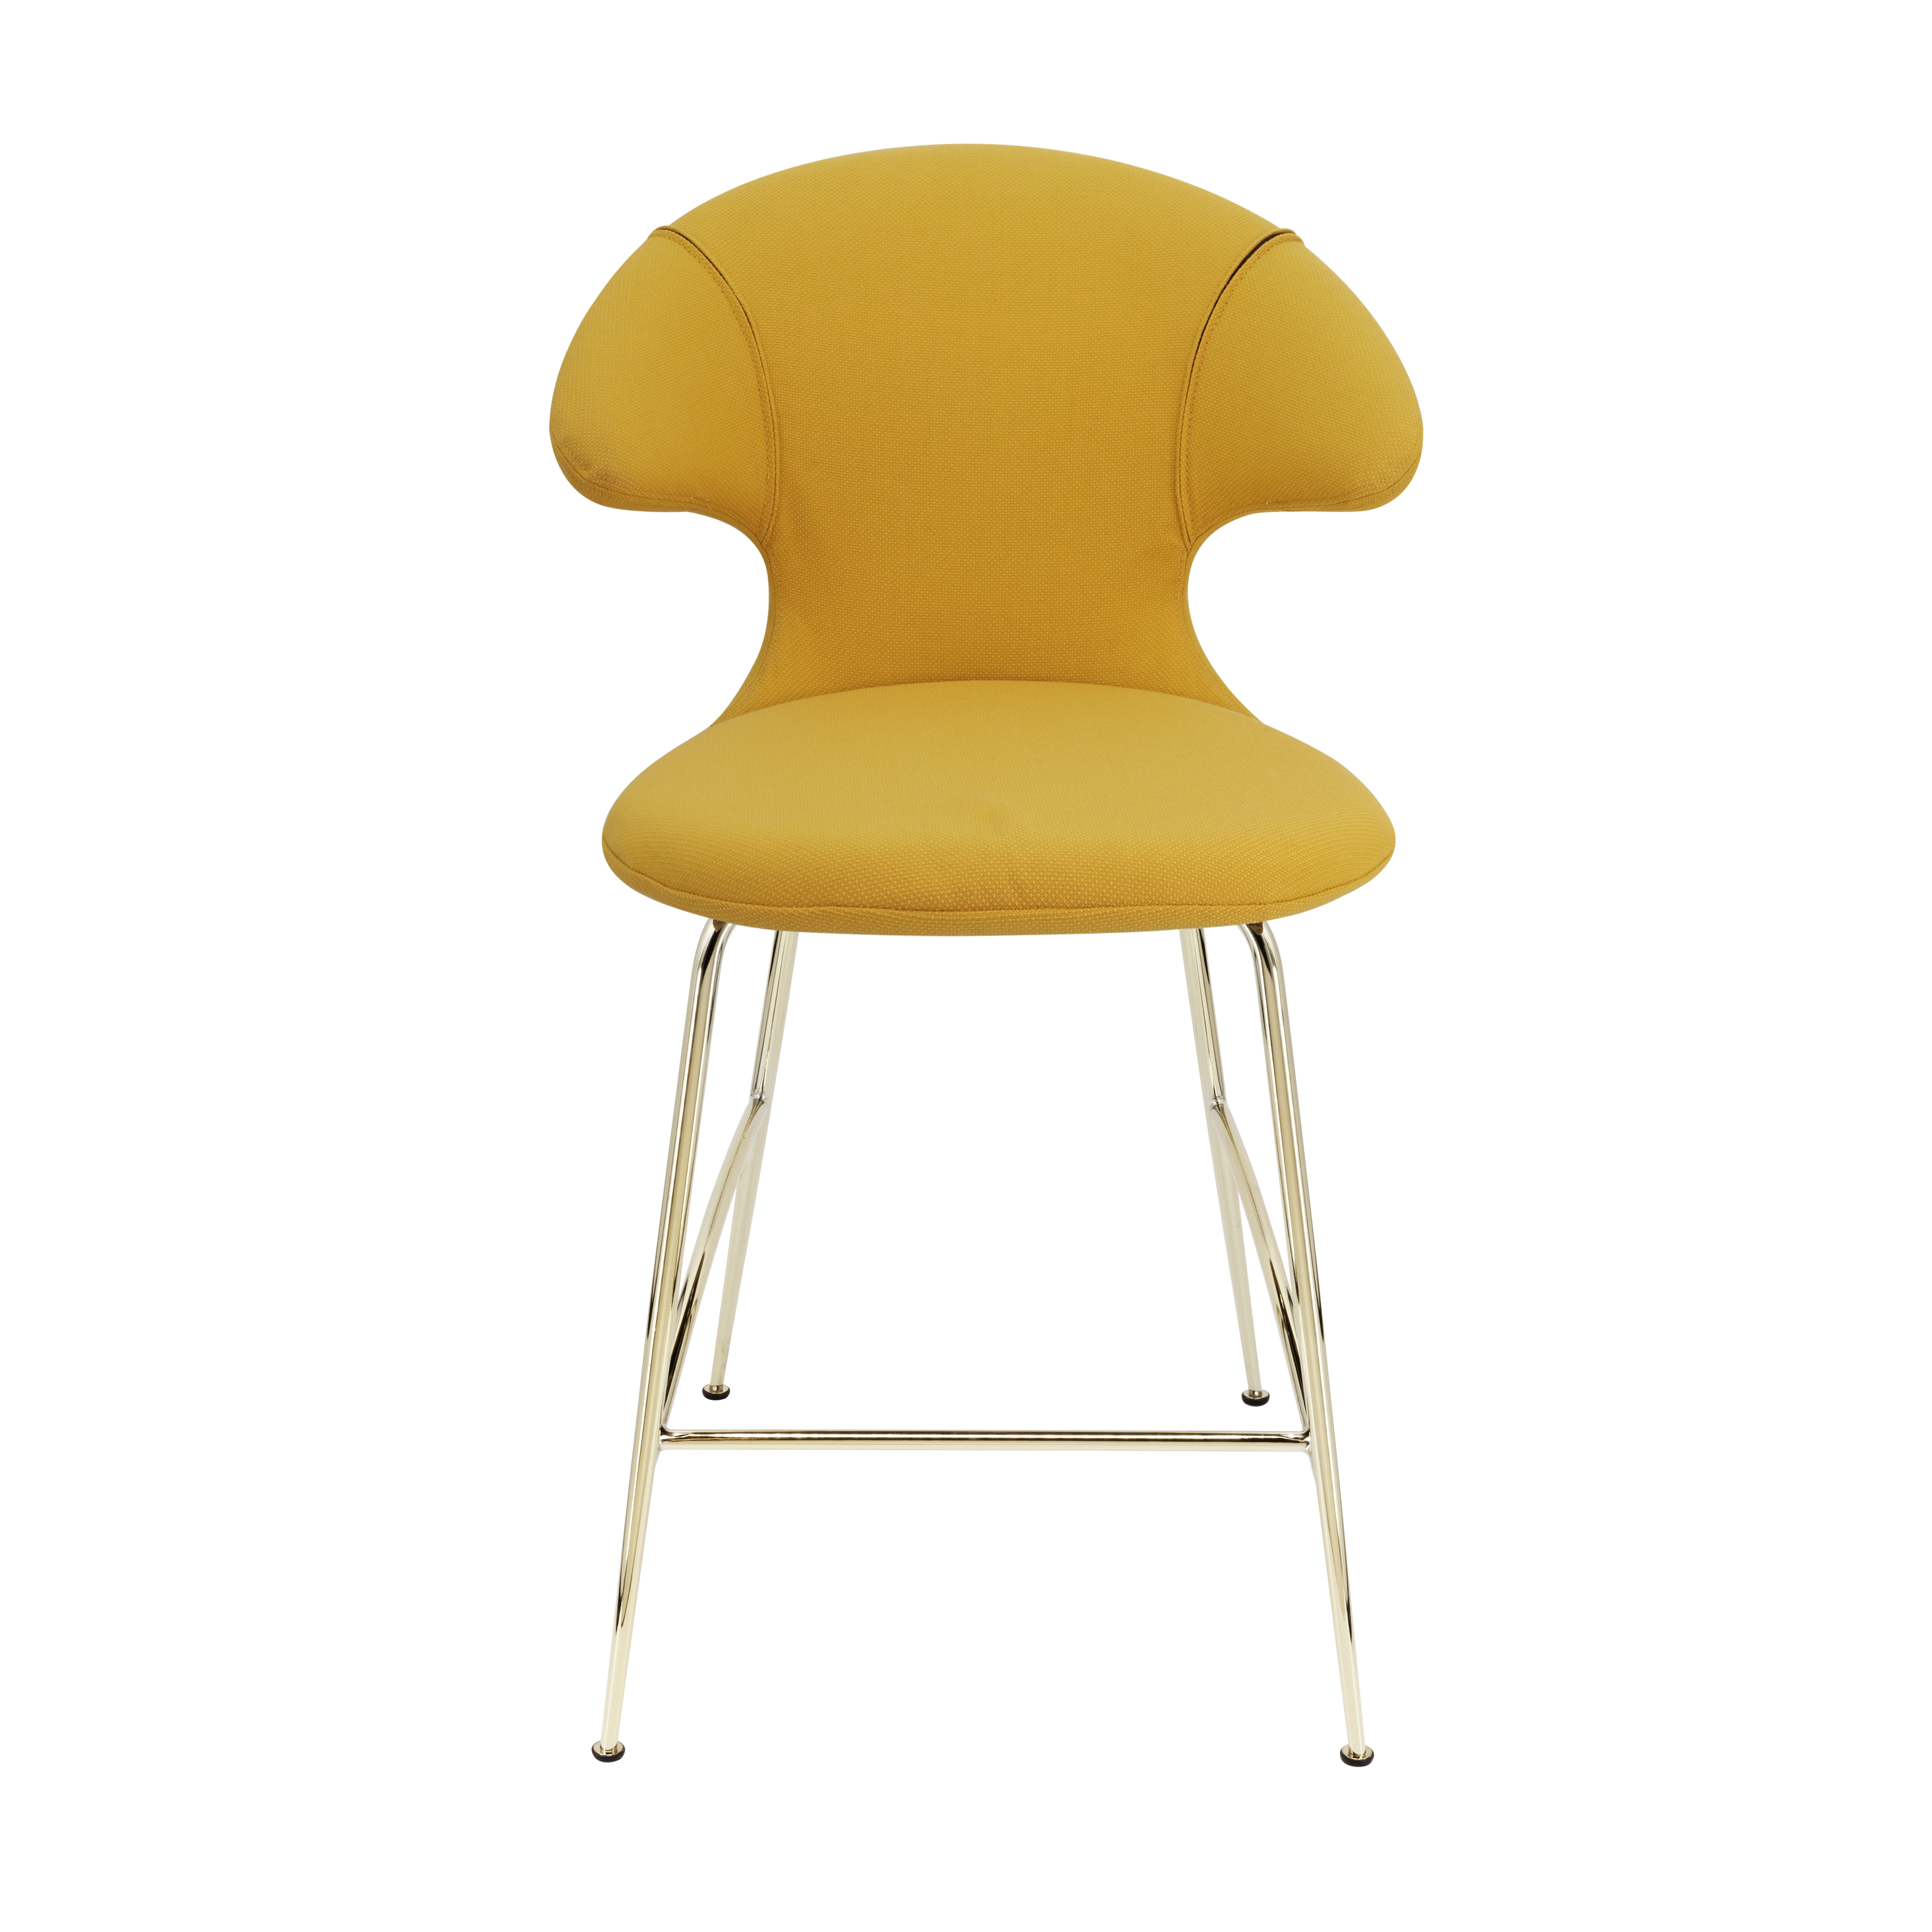 Time Flies Counter Stuhl in Curry Sun präsentiert im Onlineshop von KAQTU Design AG. Barstuhl mit Armlehne ist von Umage